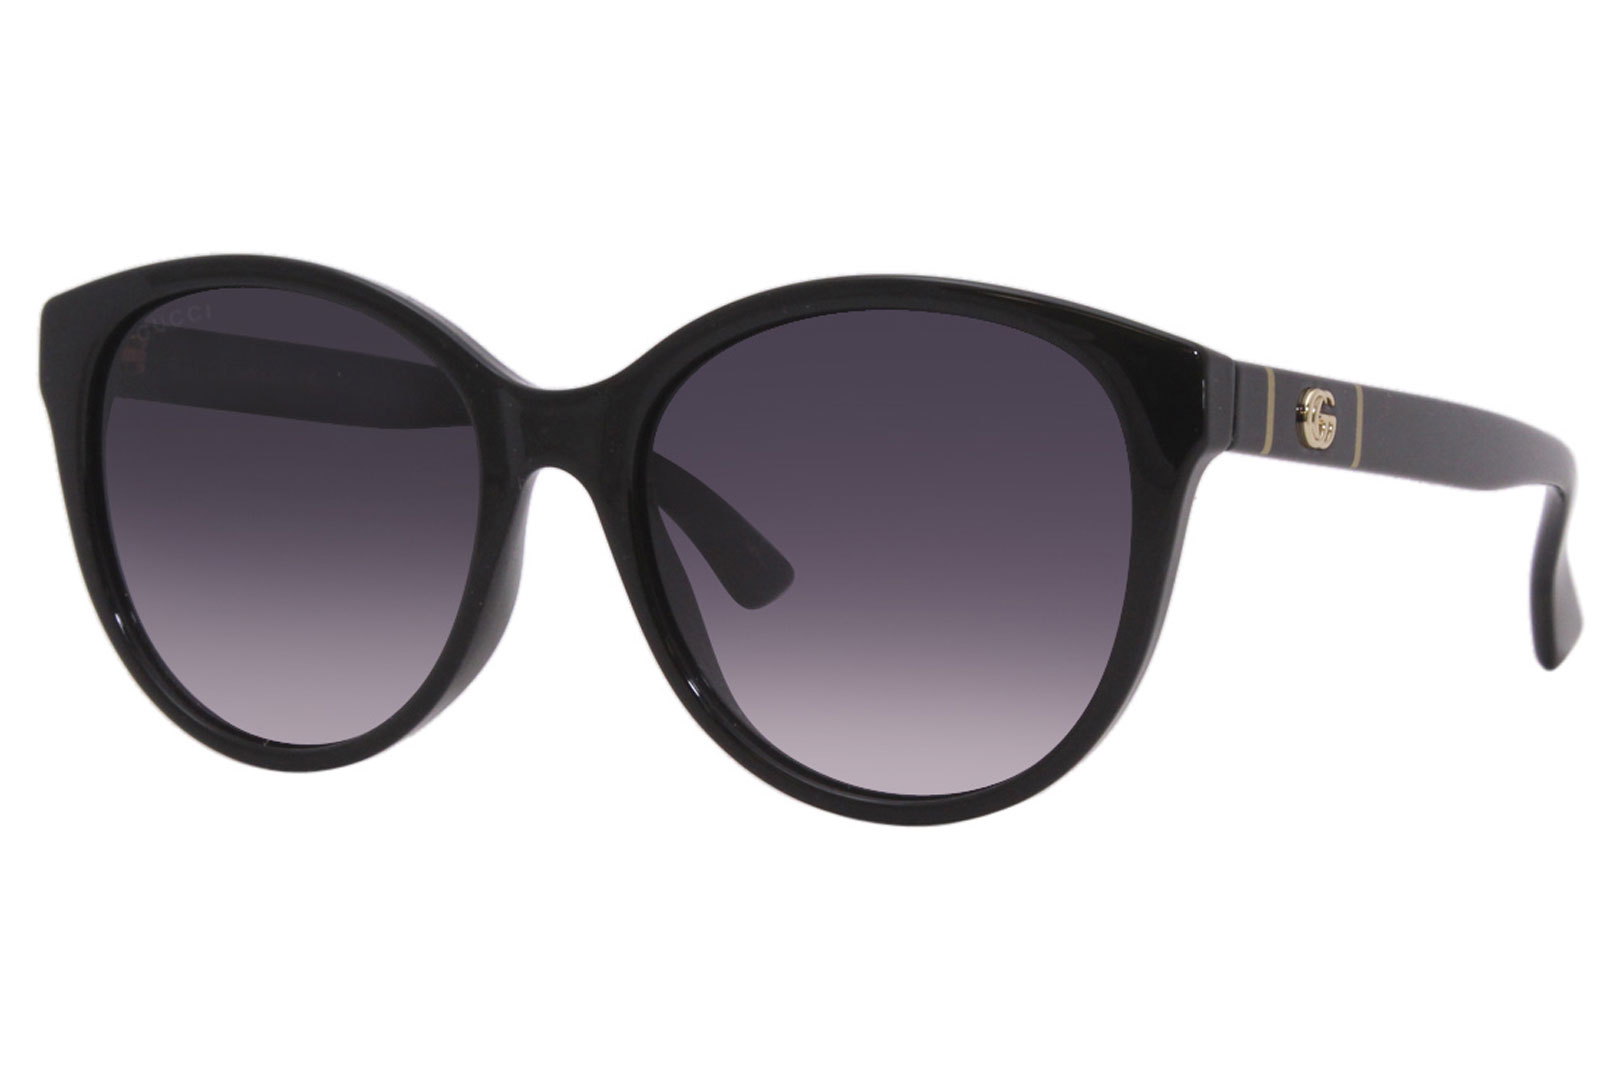 Gucci Sunglasses Women's GG0631S 001 Black/Grey Gradient 56-18-145mm ...